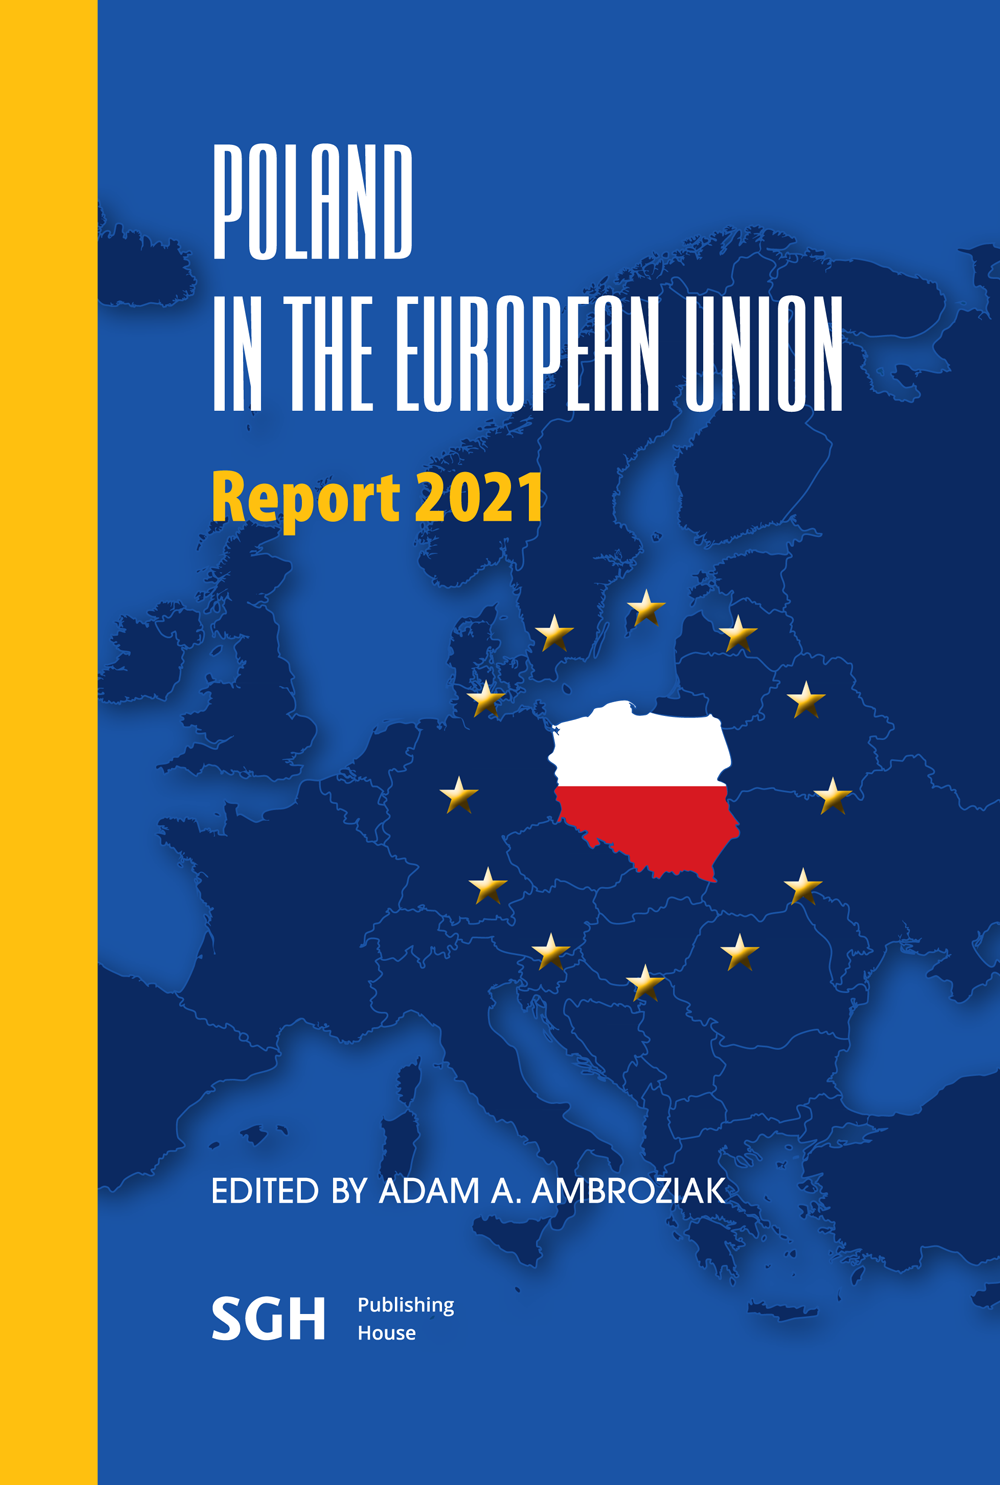 okładka ksiazki Poland in the European Union Raport 2021